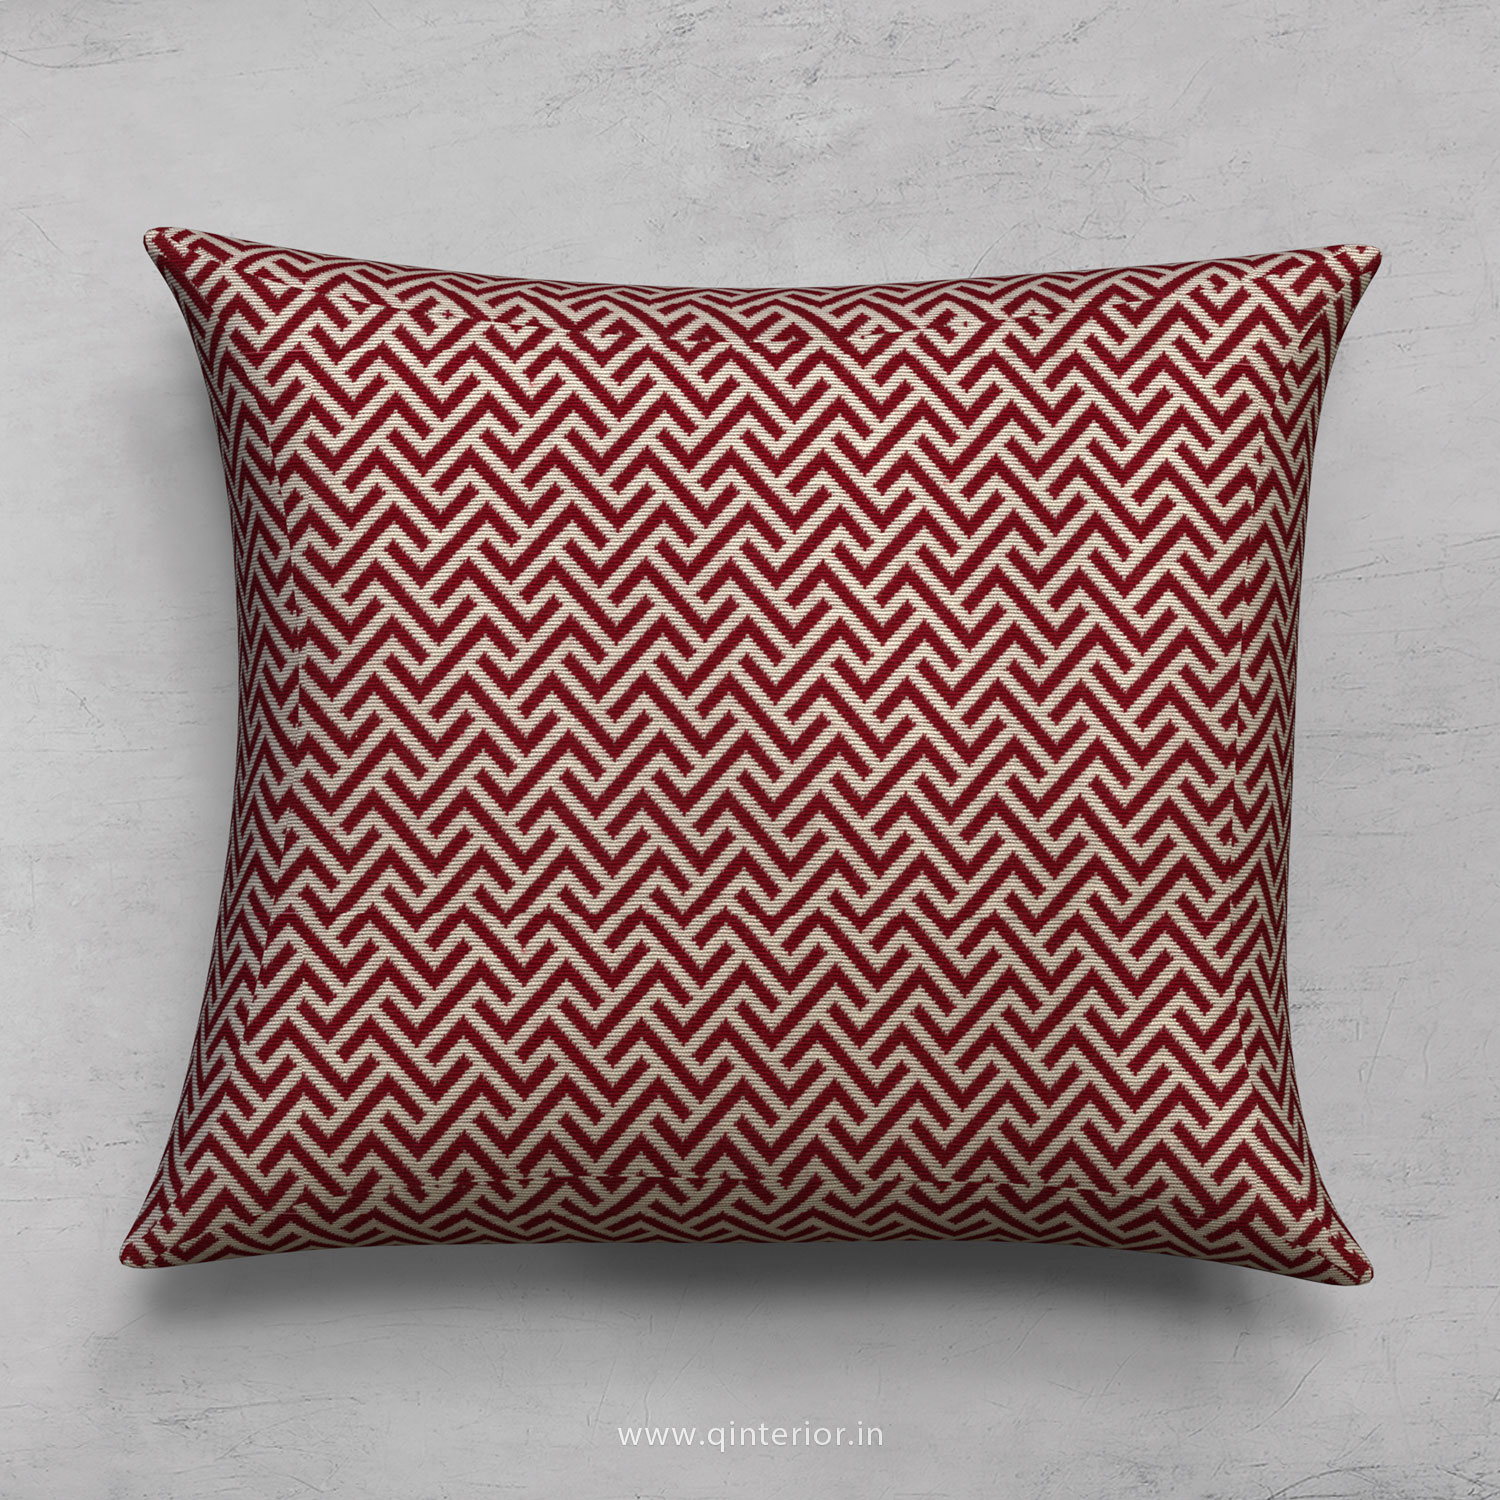 Cushion With Cushion Cover in Jacquard- CUS001 JQ14